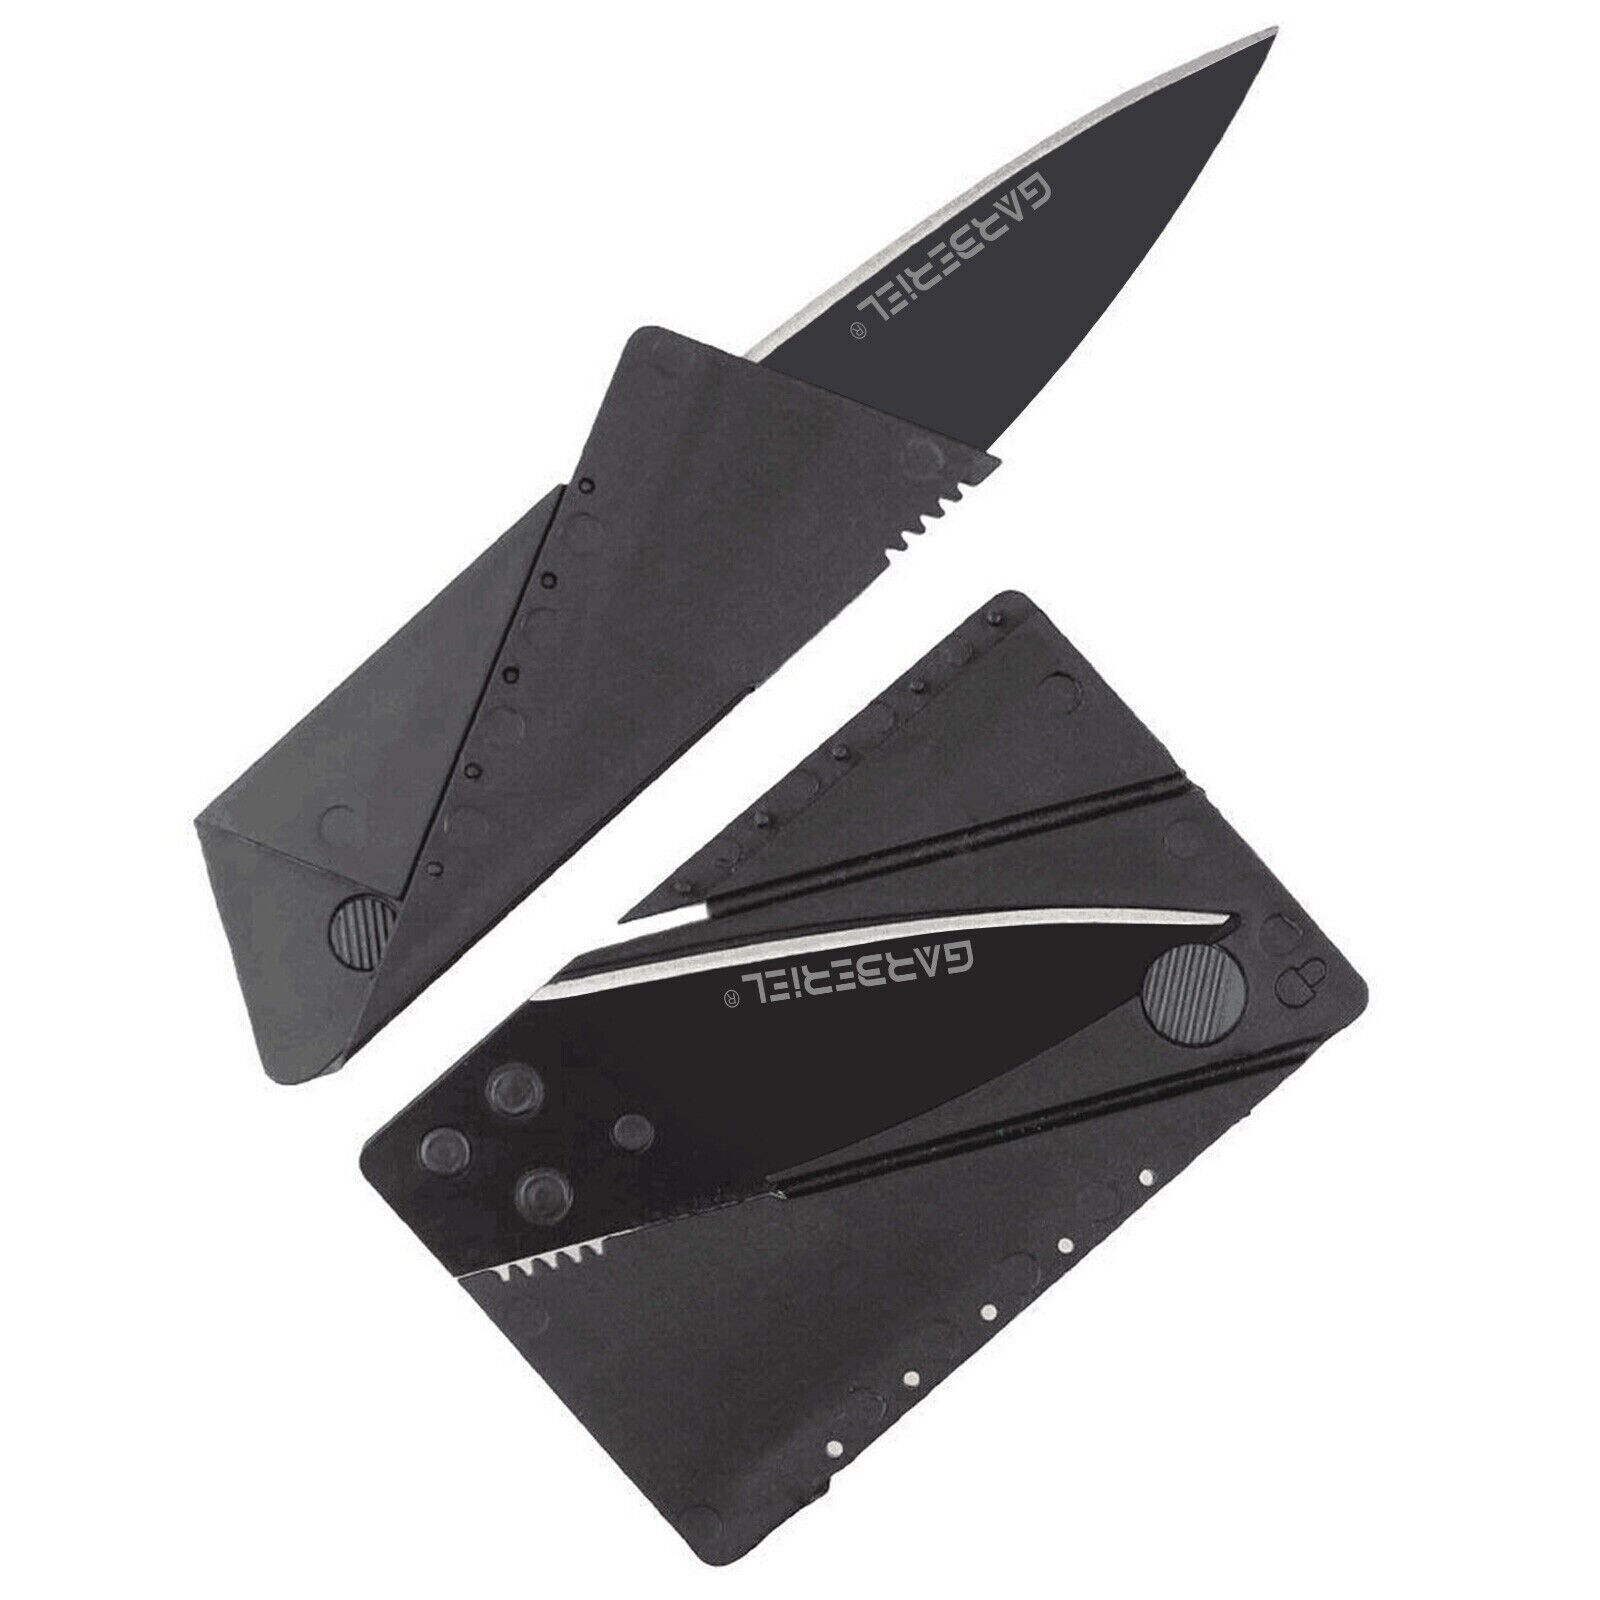 Credit Card Folding Knife Black Wallet Sharp Thin Hunting Camping USA SELLER